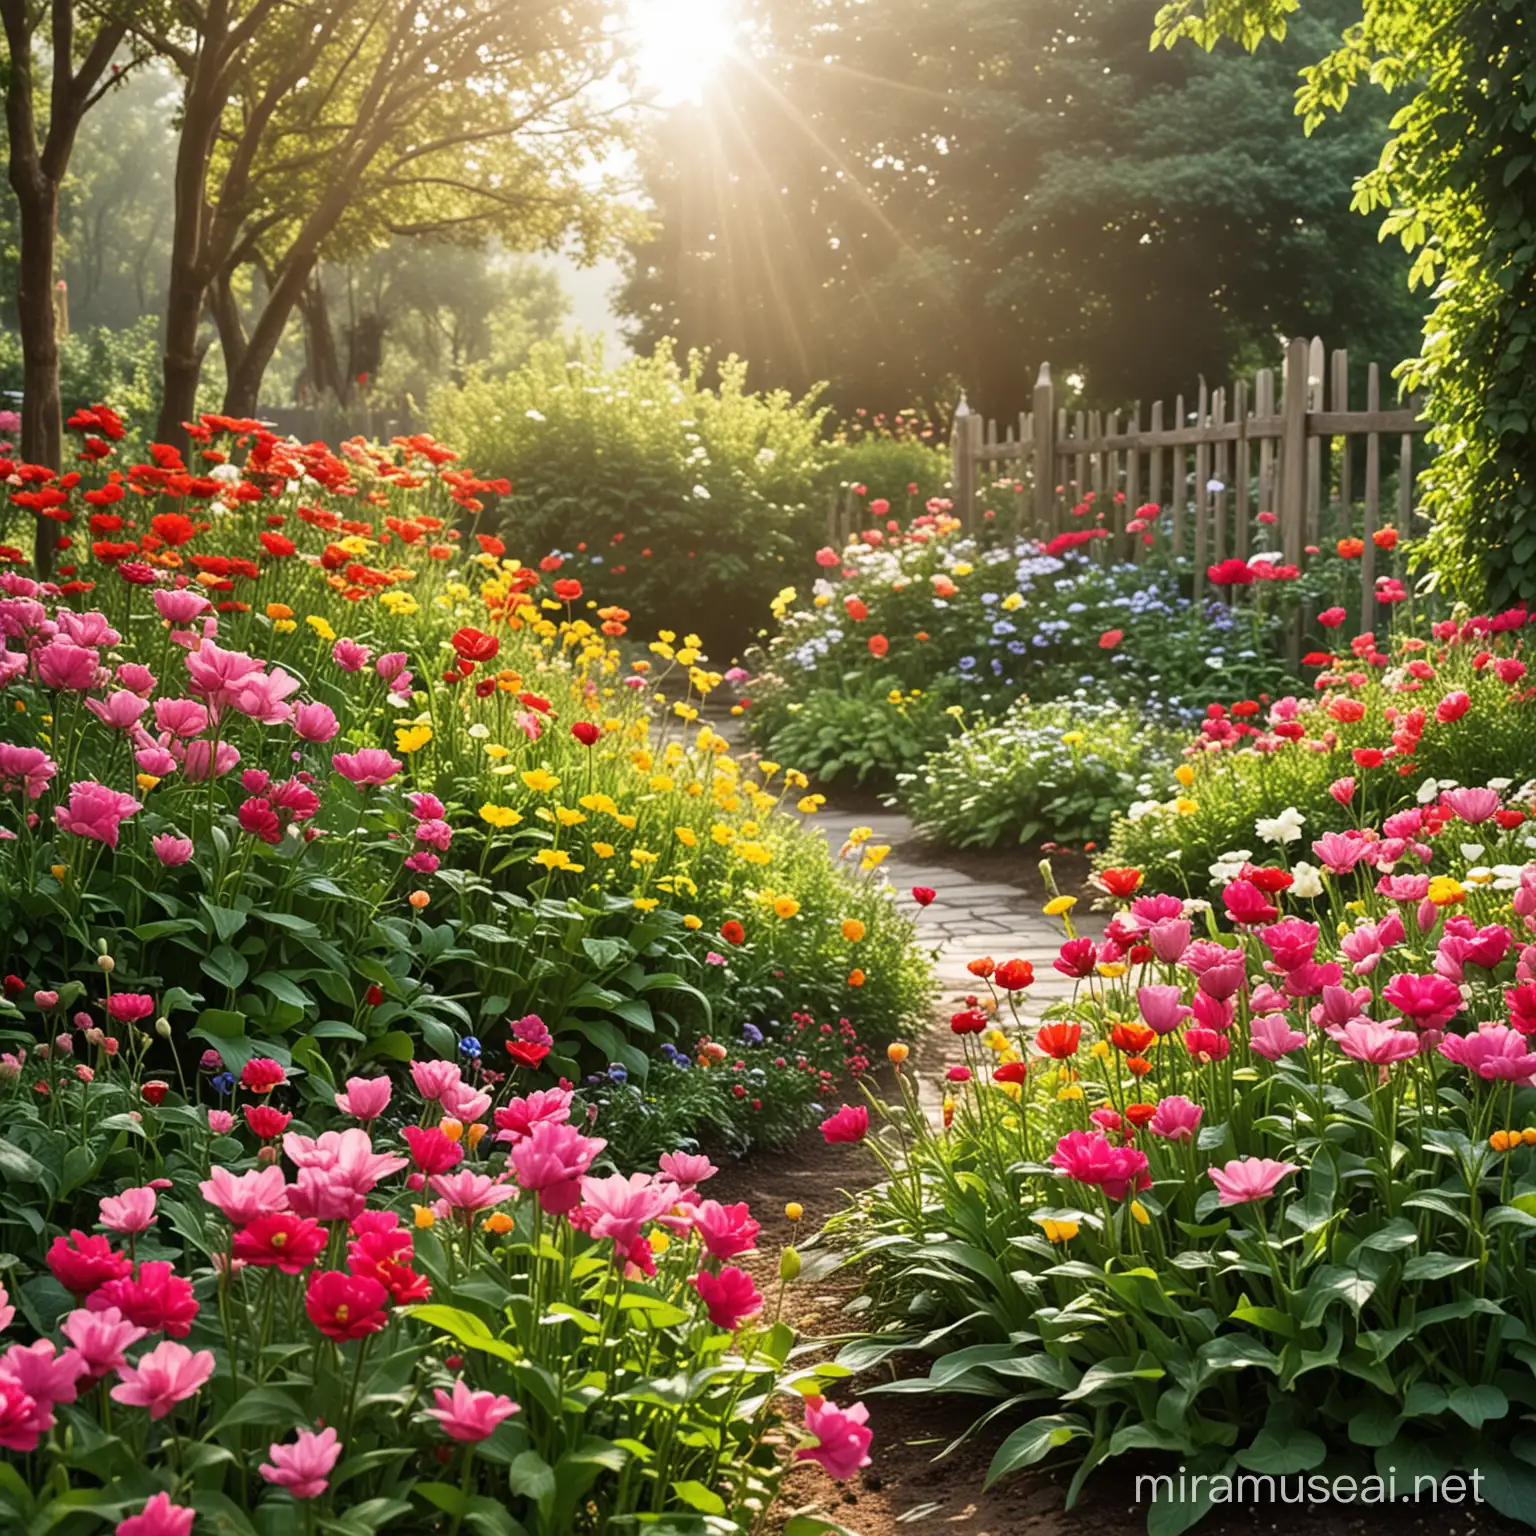 Colorful Flower Garden in the Morning Sunlight